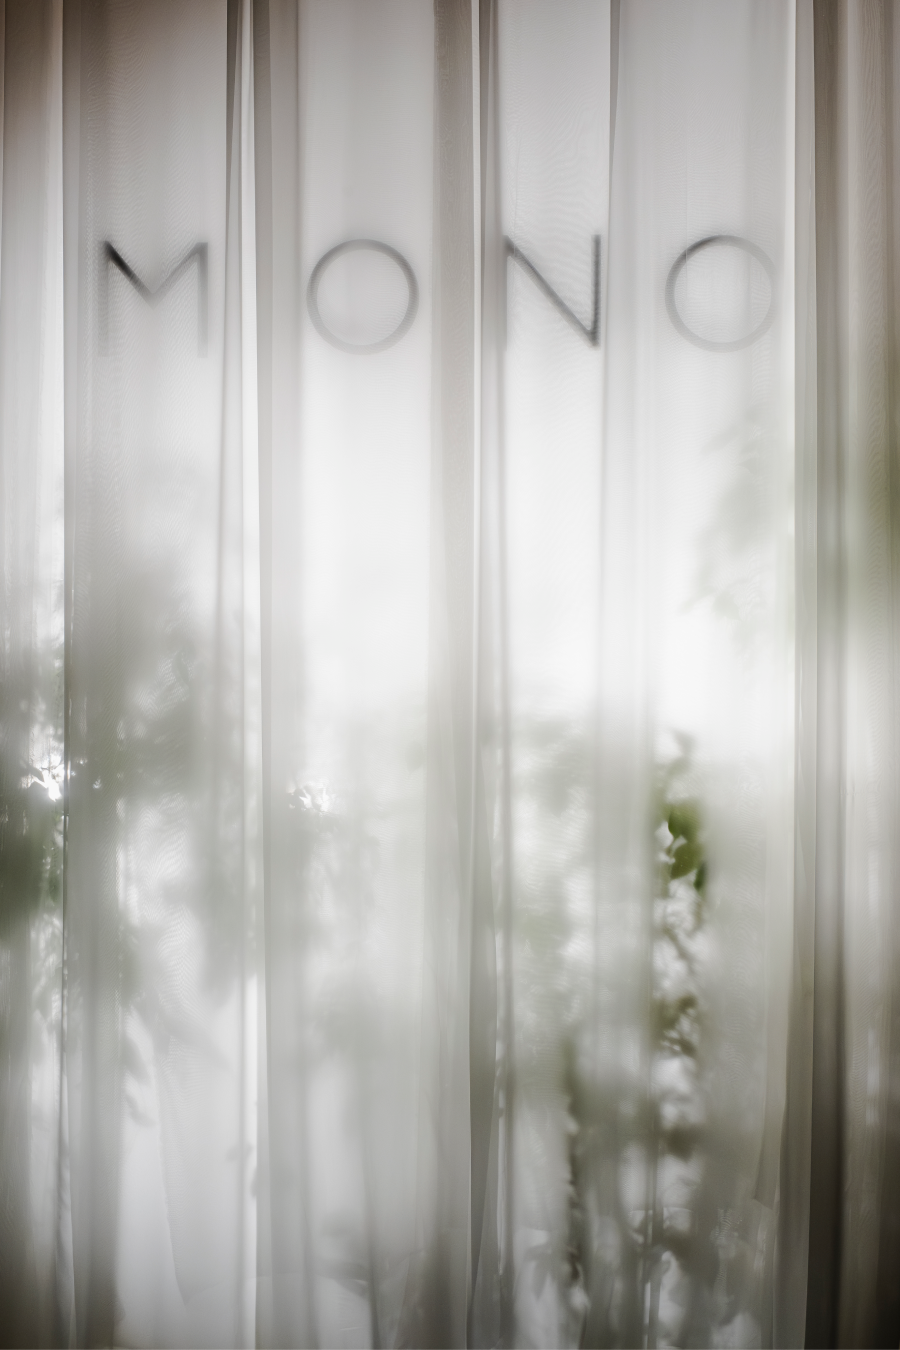 В Музее архитектуры имени Щусева прошел запуск девелопера MONO (фото 3)